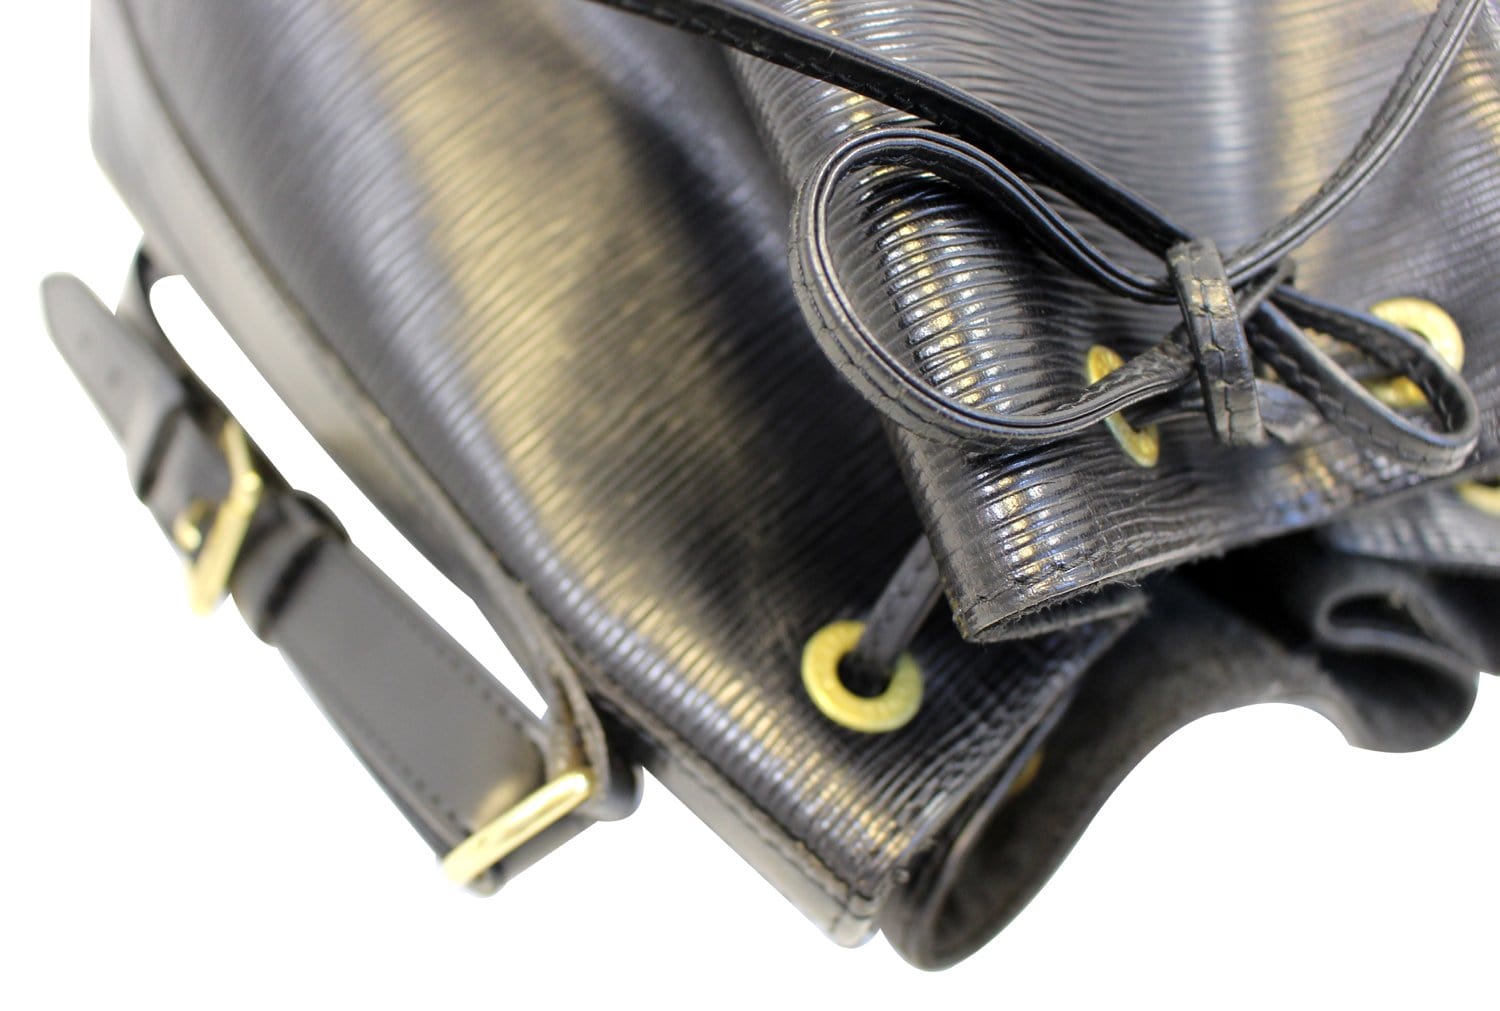 LOUIS VUITTON PETIT NOE Epi Black Noir Shoulder Bag No.1200-e